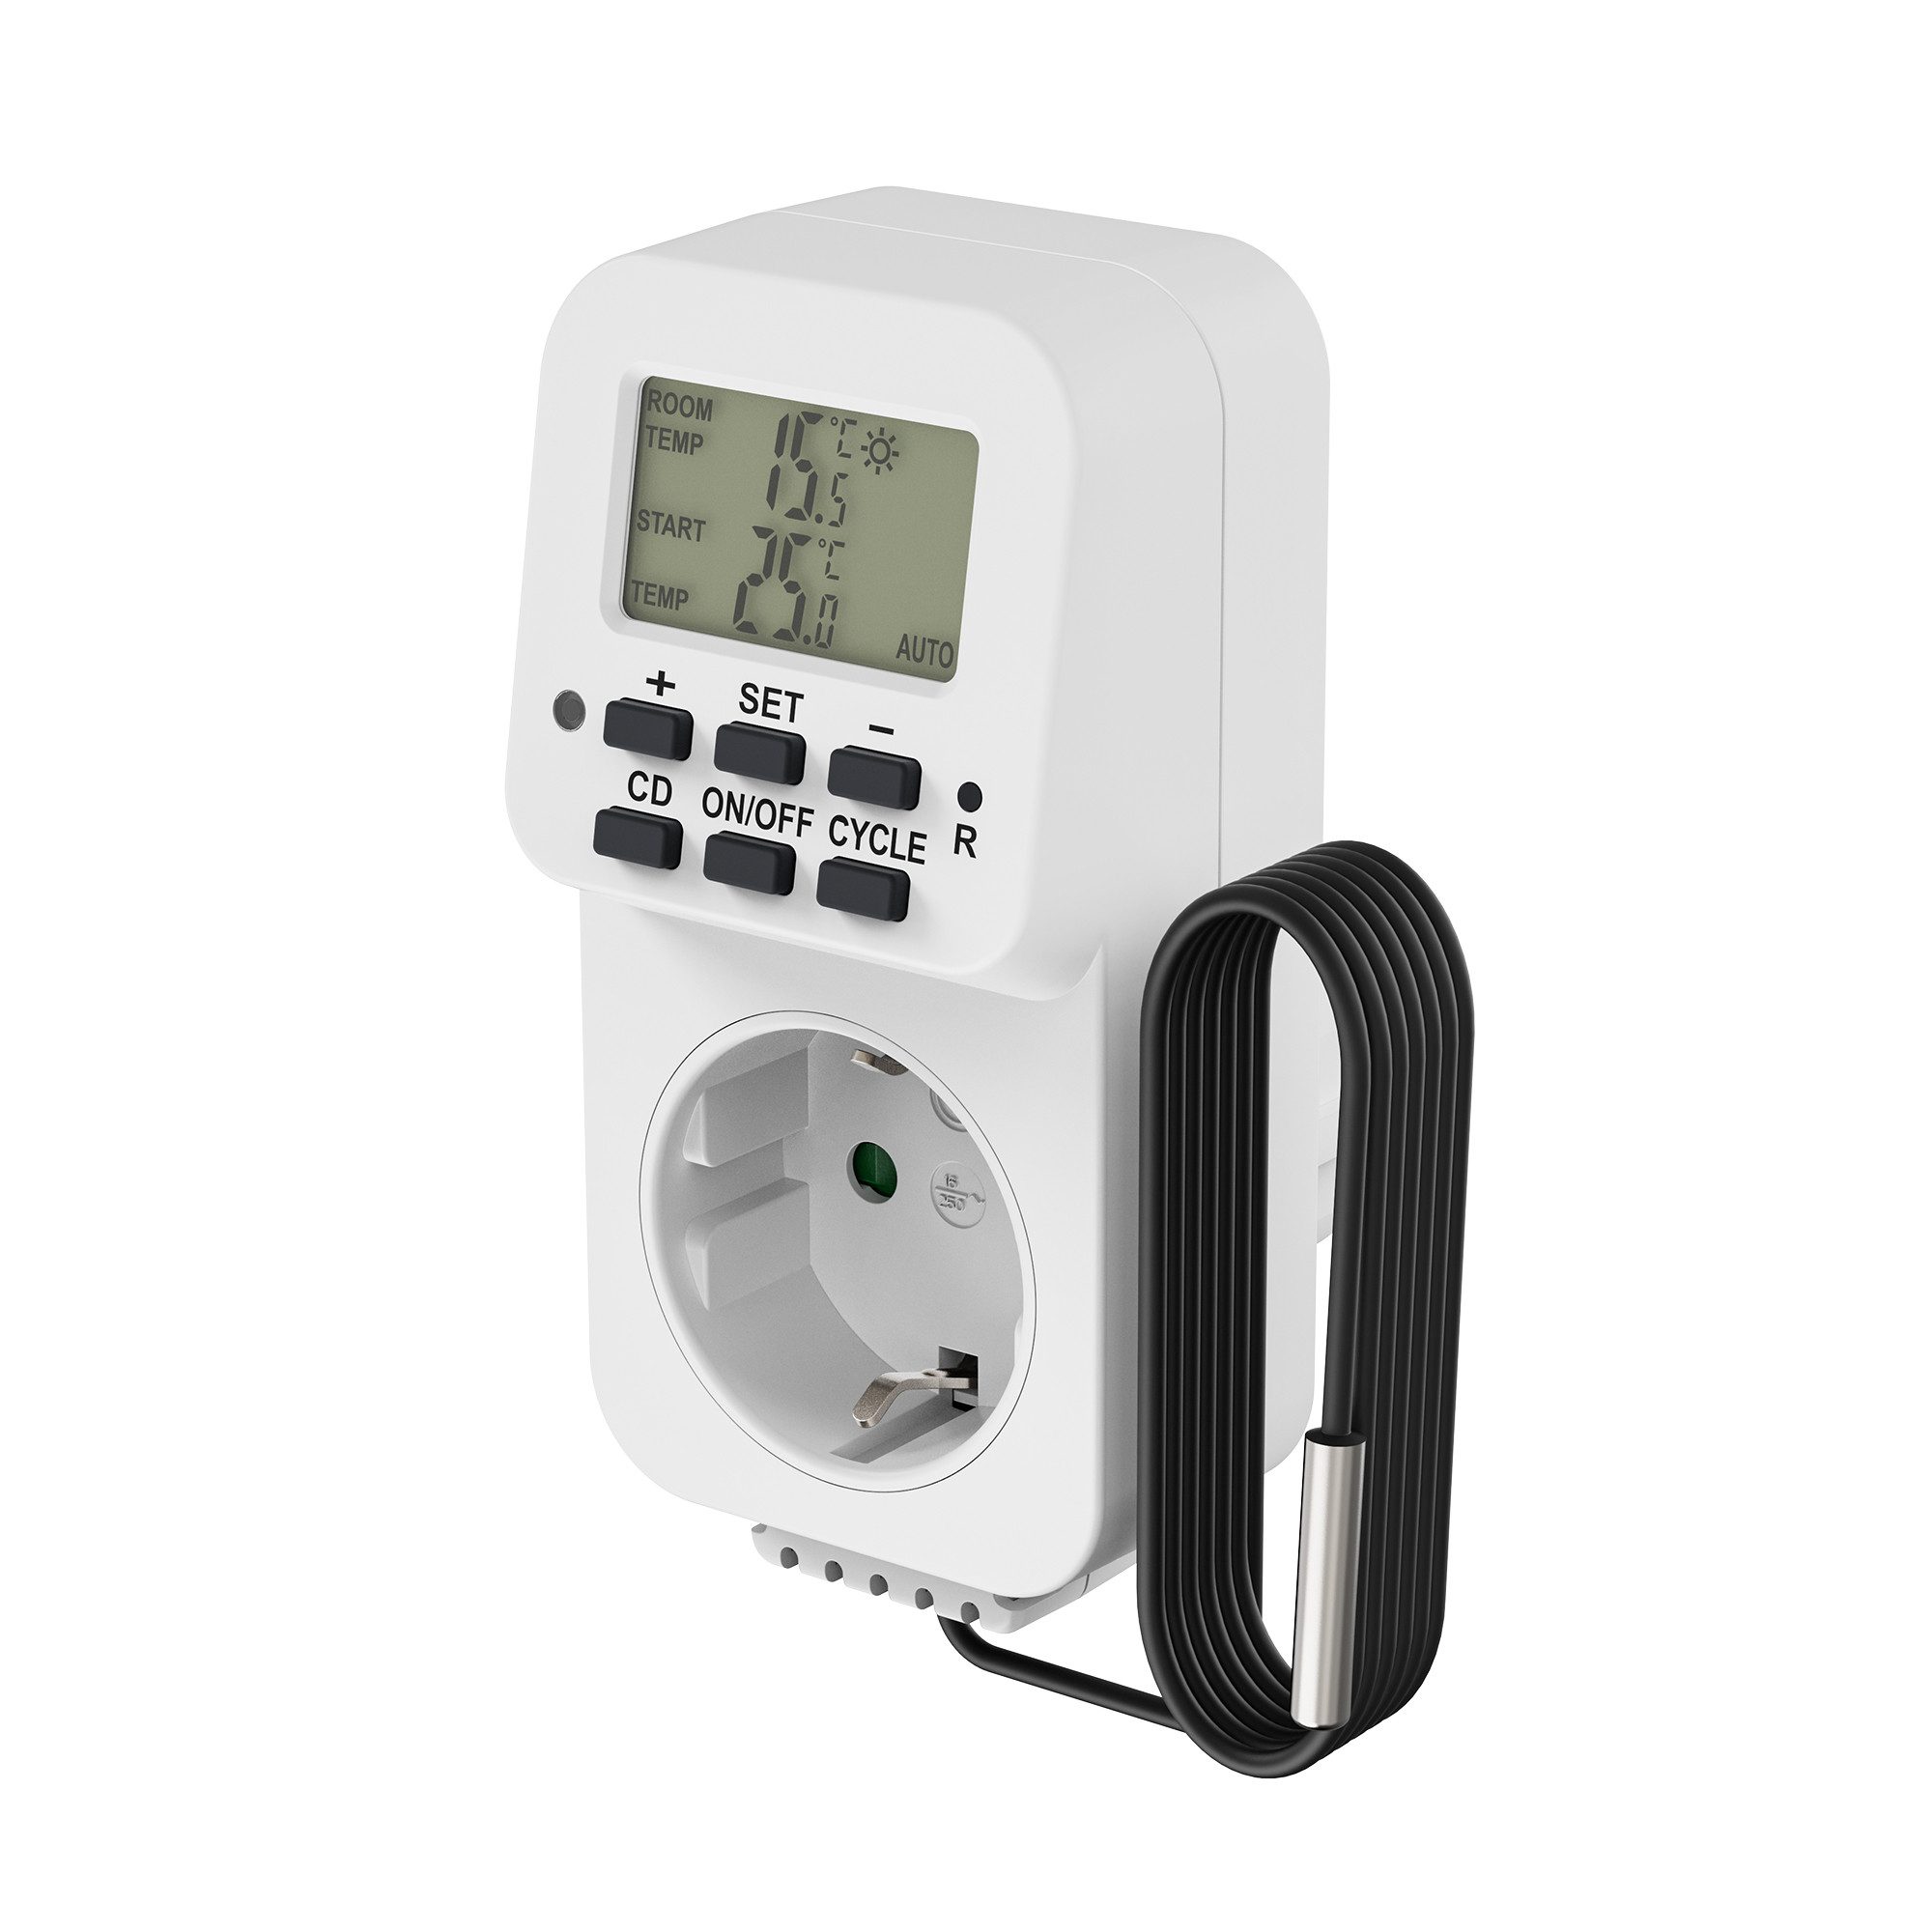 conecto Steckdosen-Thermostat conecto digitales Thermostat Steckdose, Temperaturregler, Heizung